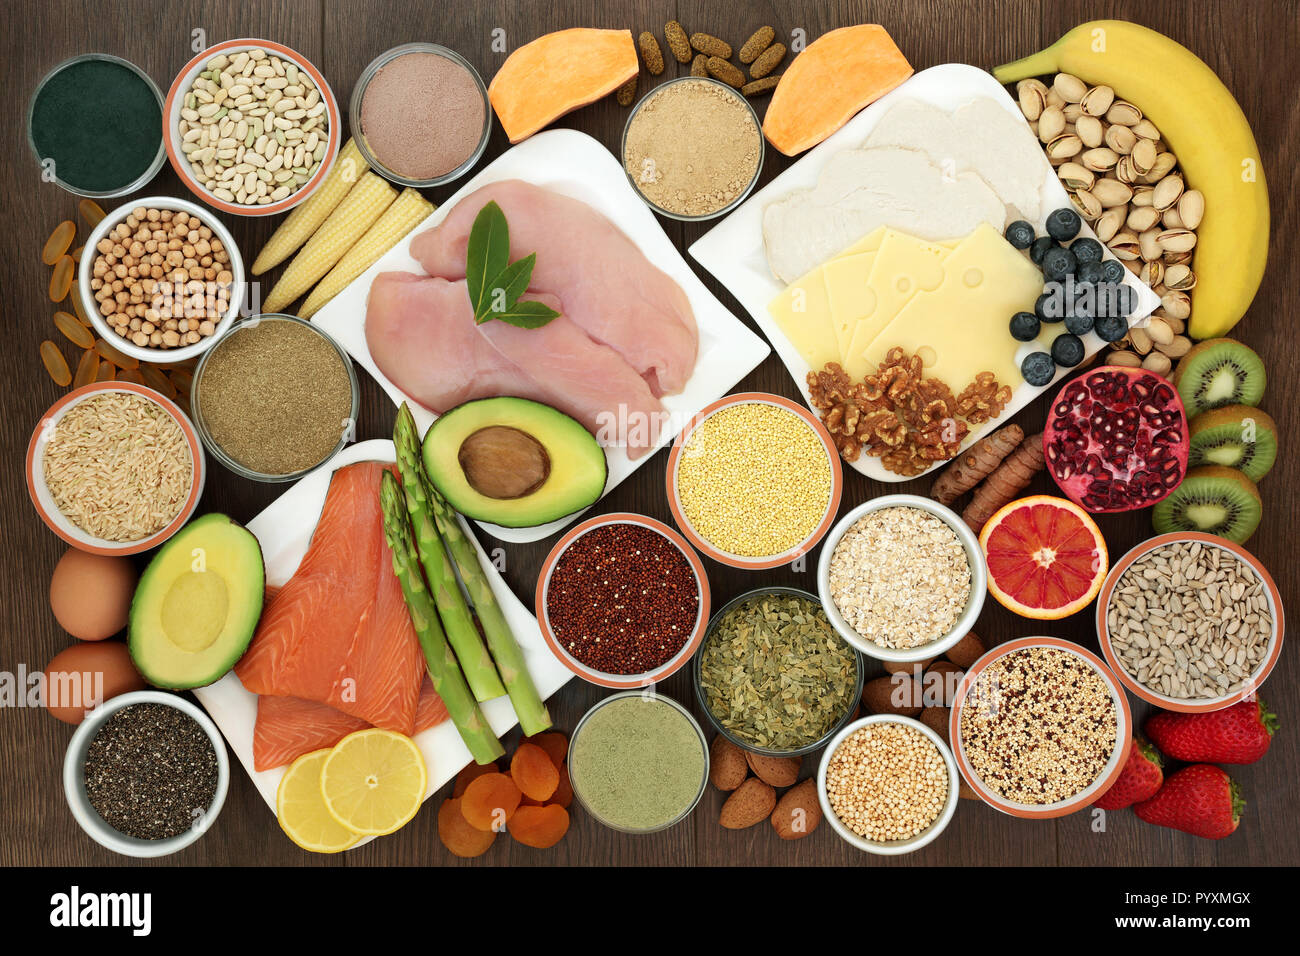 Nourriture santé pour les culturistes en protéines, y compris la viande maigre, saumon, produits laitiers, complément alimentaire pour les poudres et comprimés, les légumineuses, les céréales et céréales. Banque D'Images